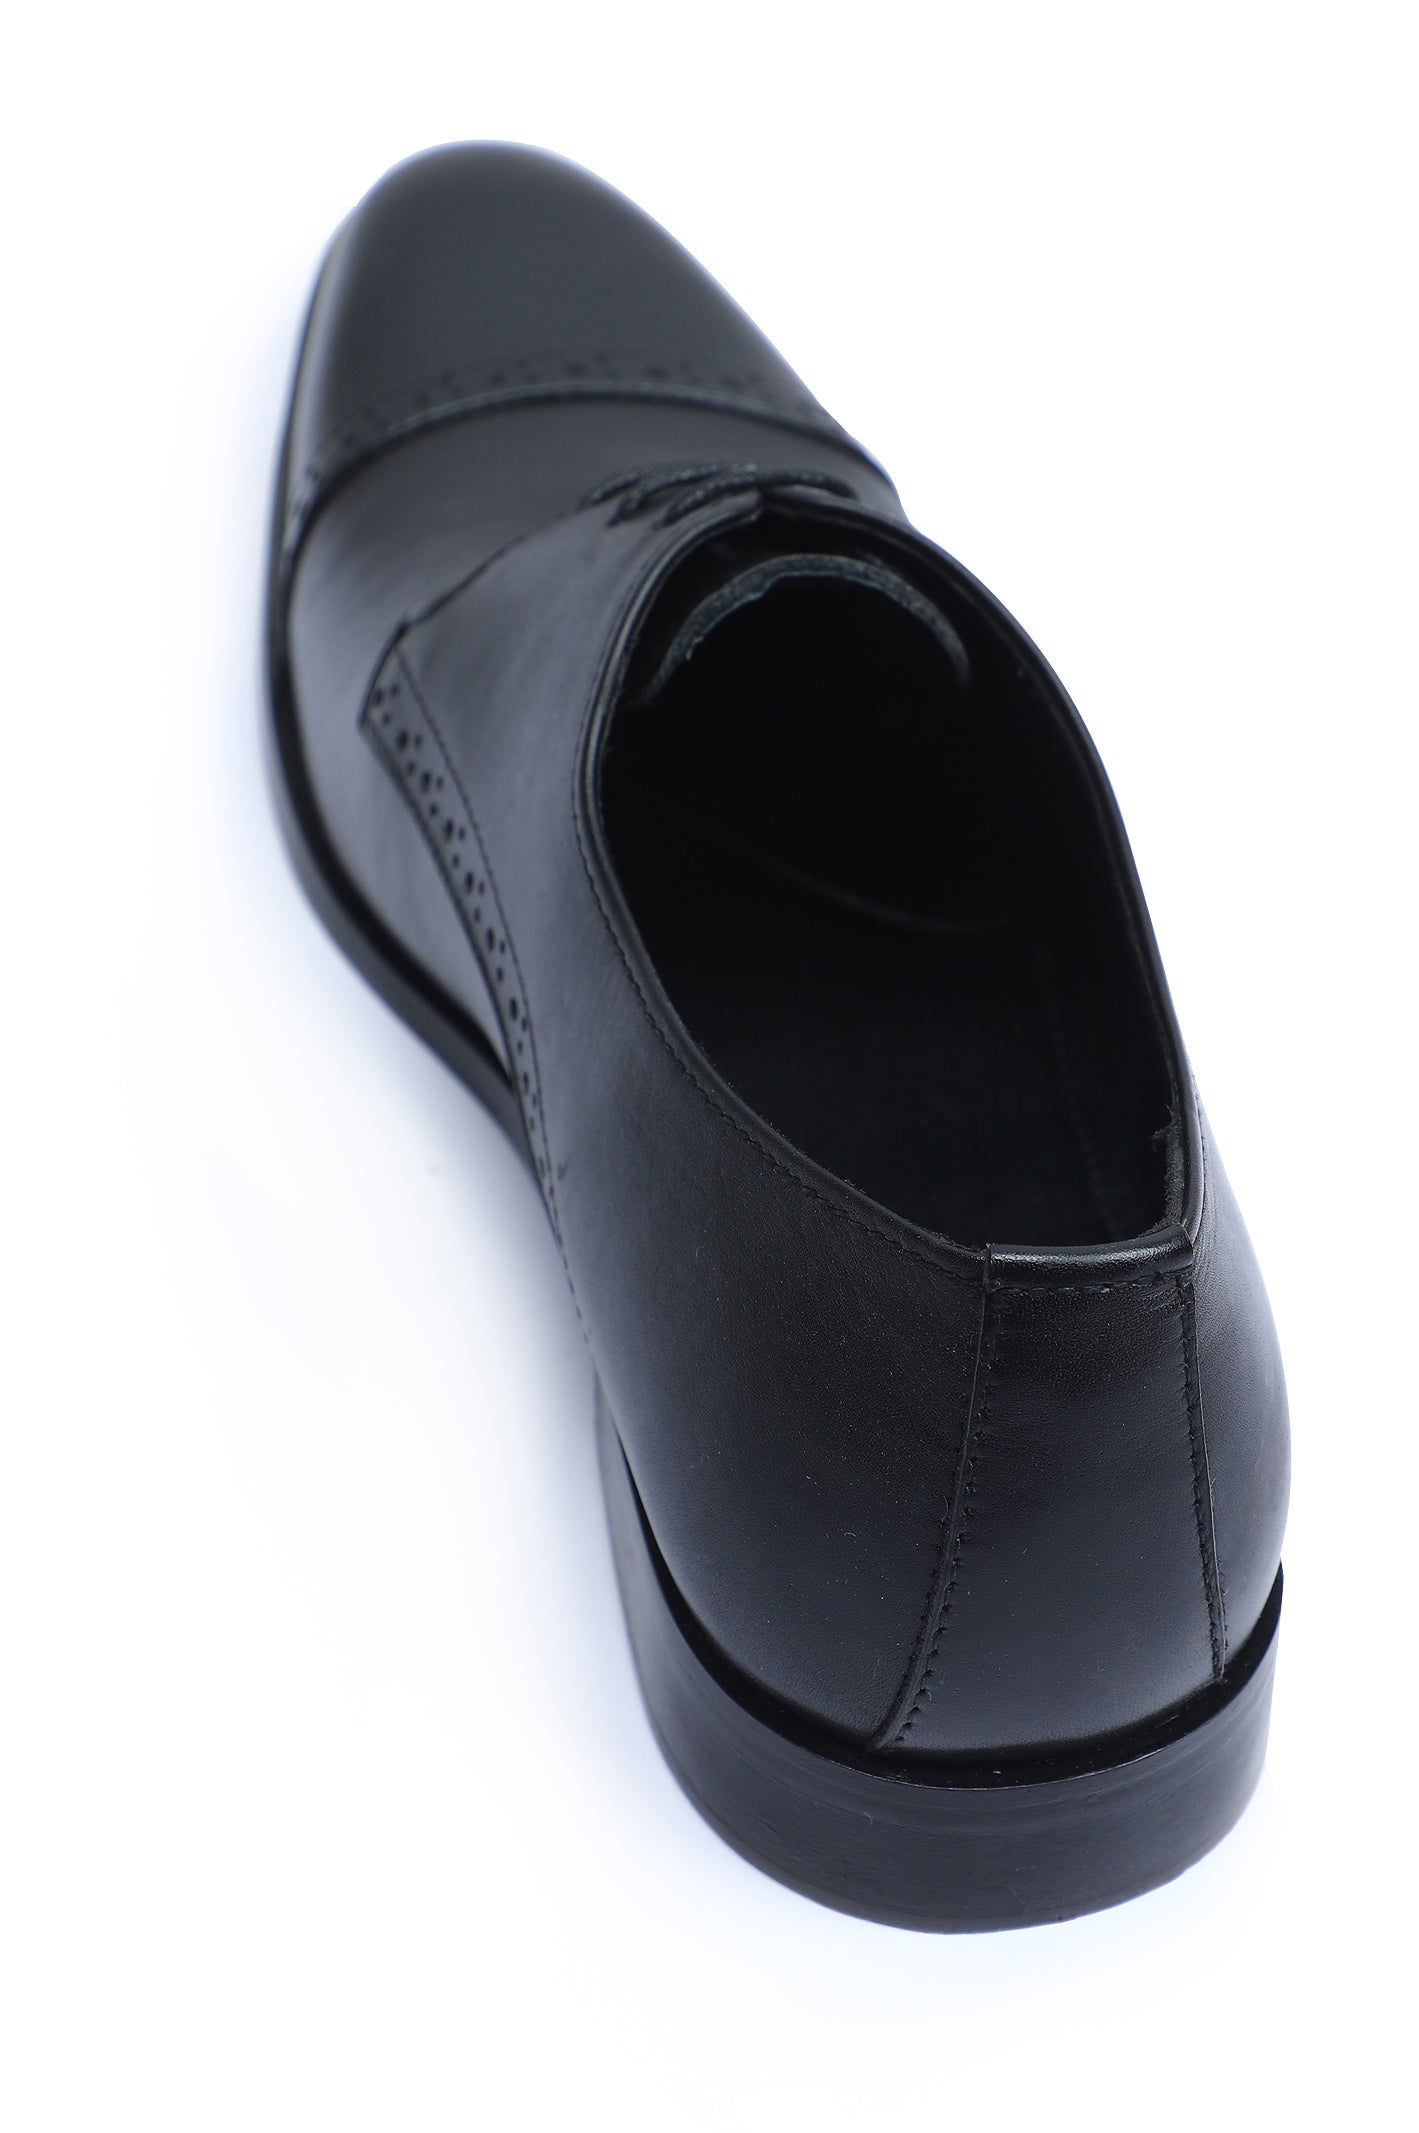 Formal Shoes For Men SKU: SMF-0254-BLACK - Diners